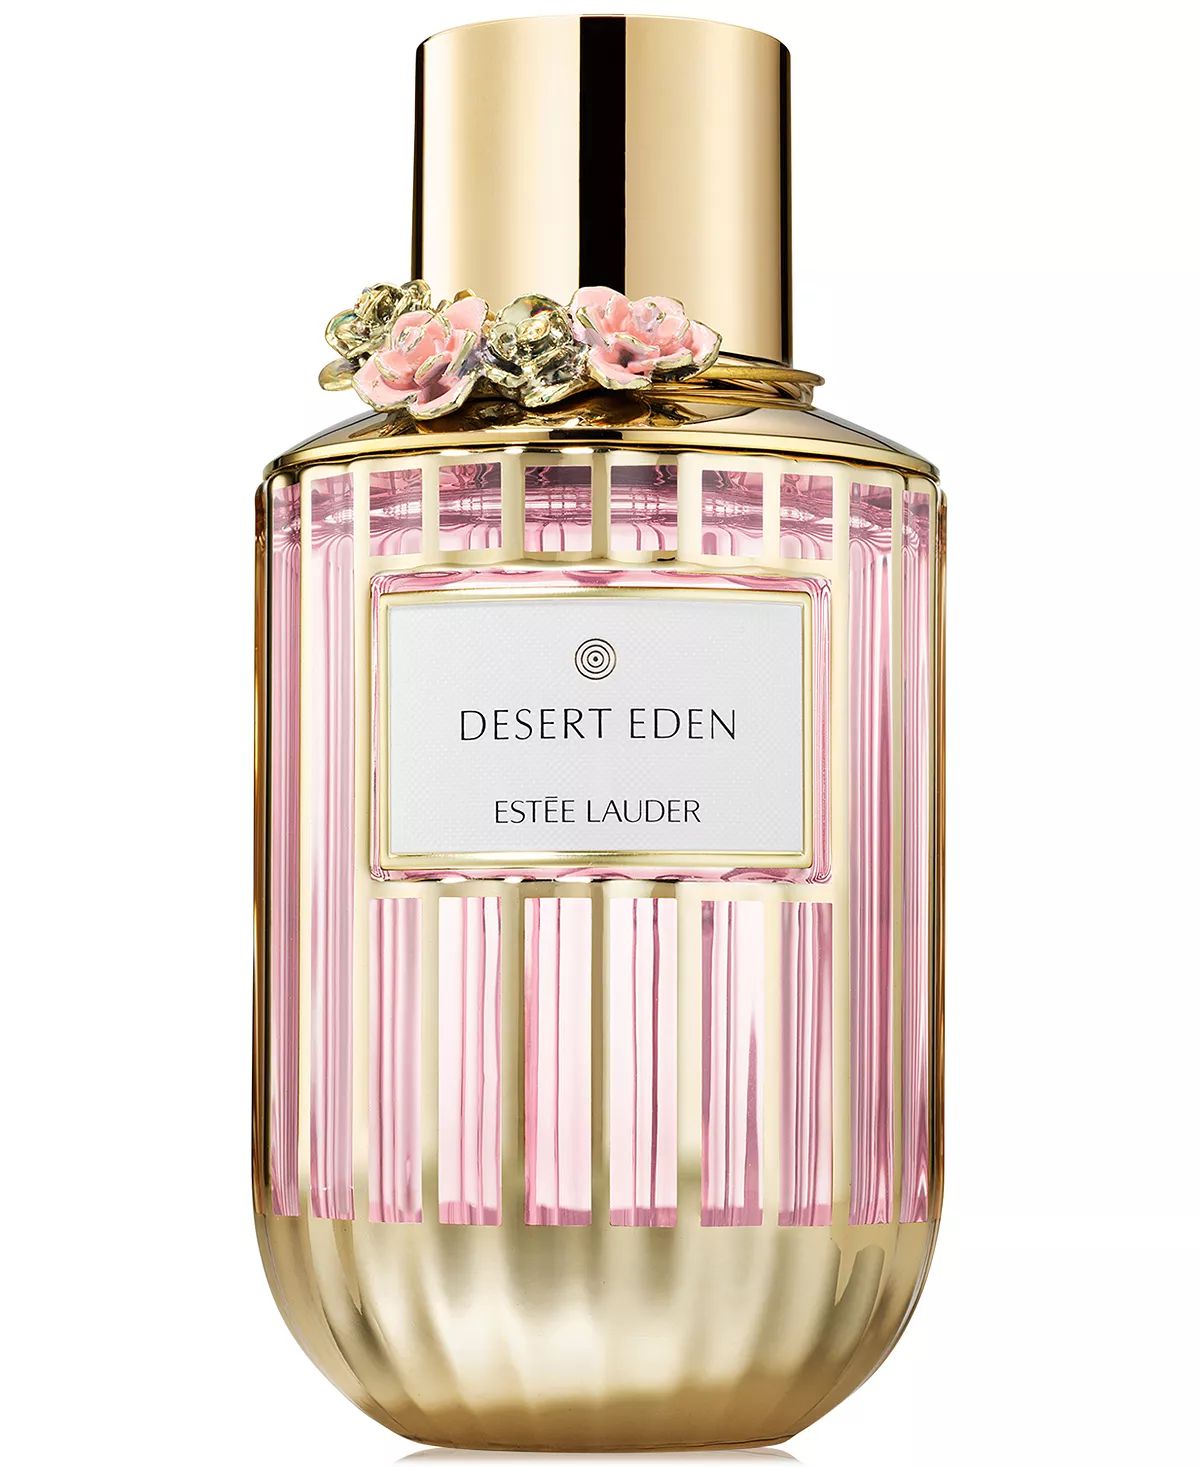 Desert Eden Eau de Parfum Limited Edition Estée Lauder fragancia una